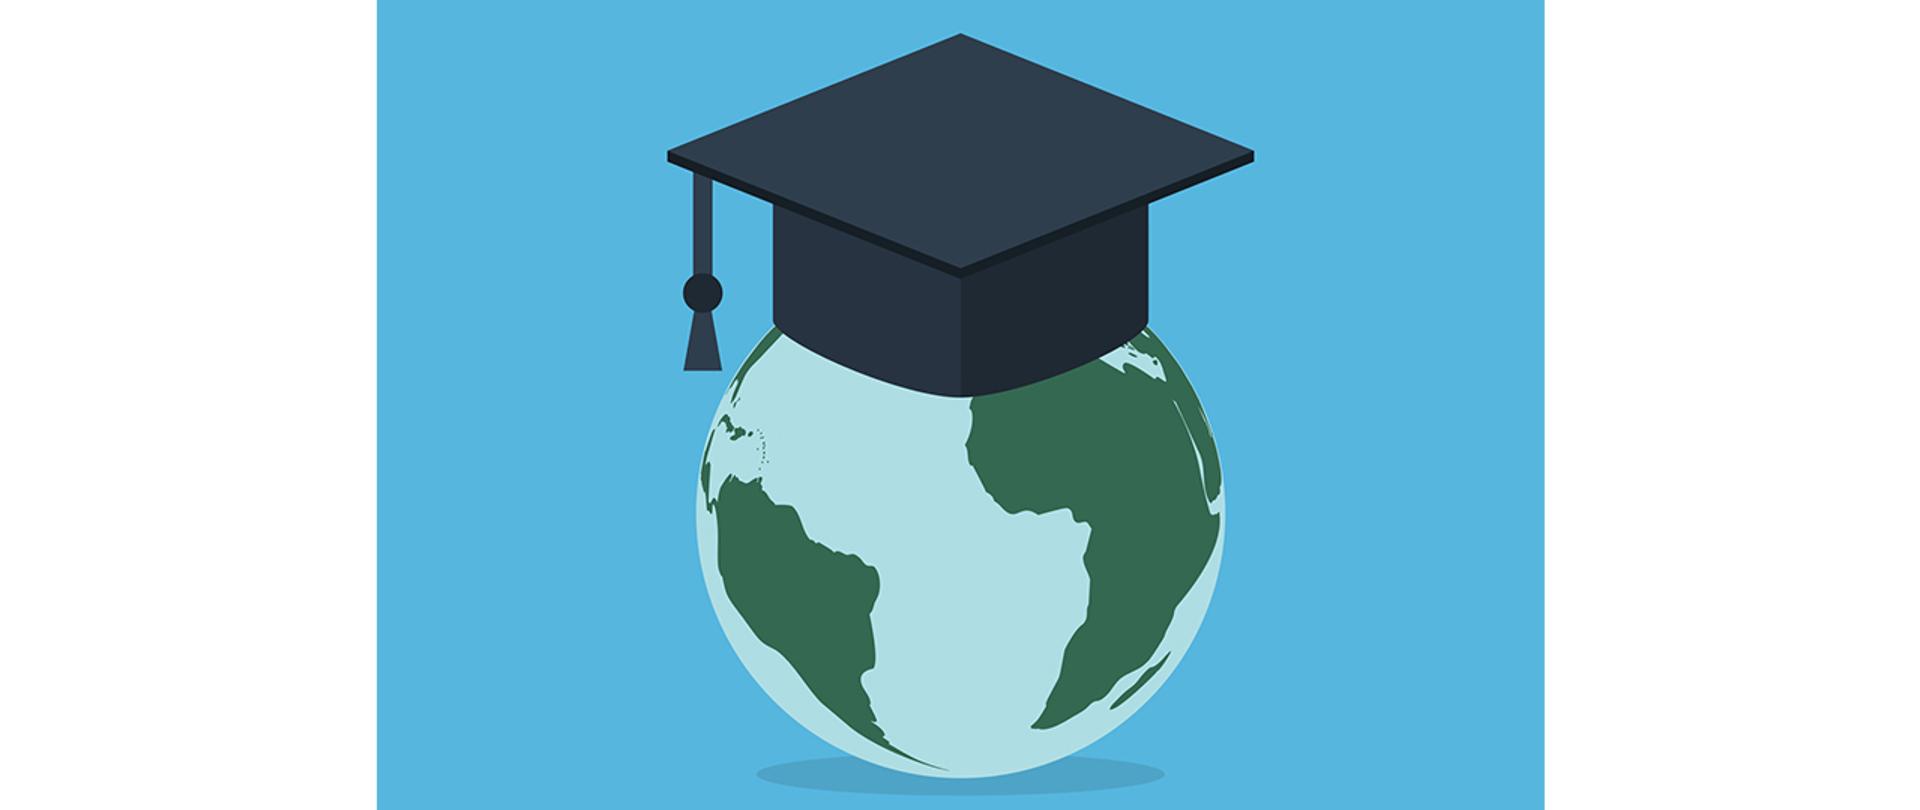 Na grafice: rysunkowa kula ziemska na której umieszczony jest biret absolwenta 